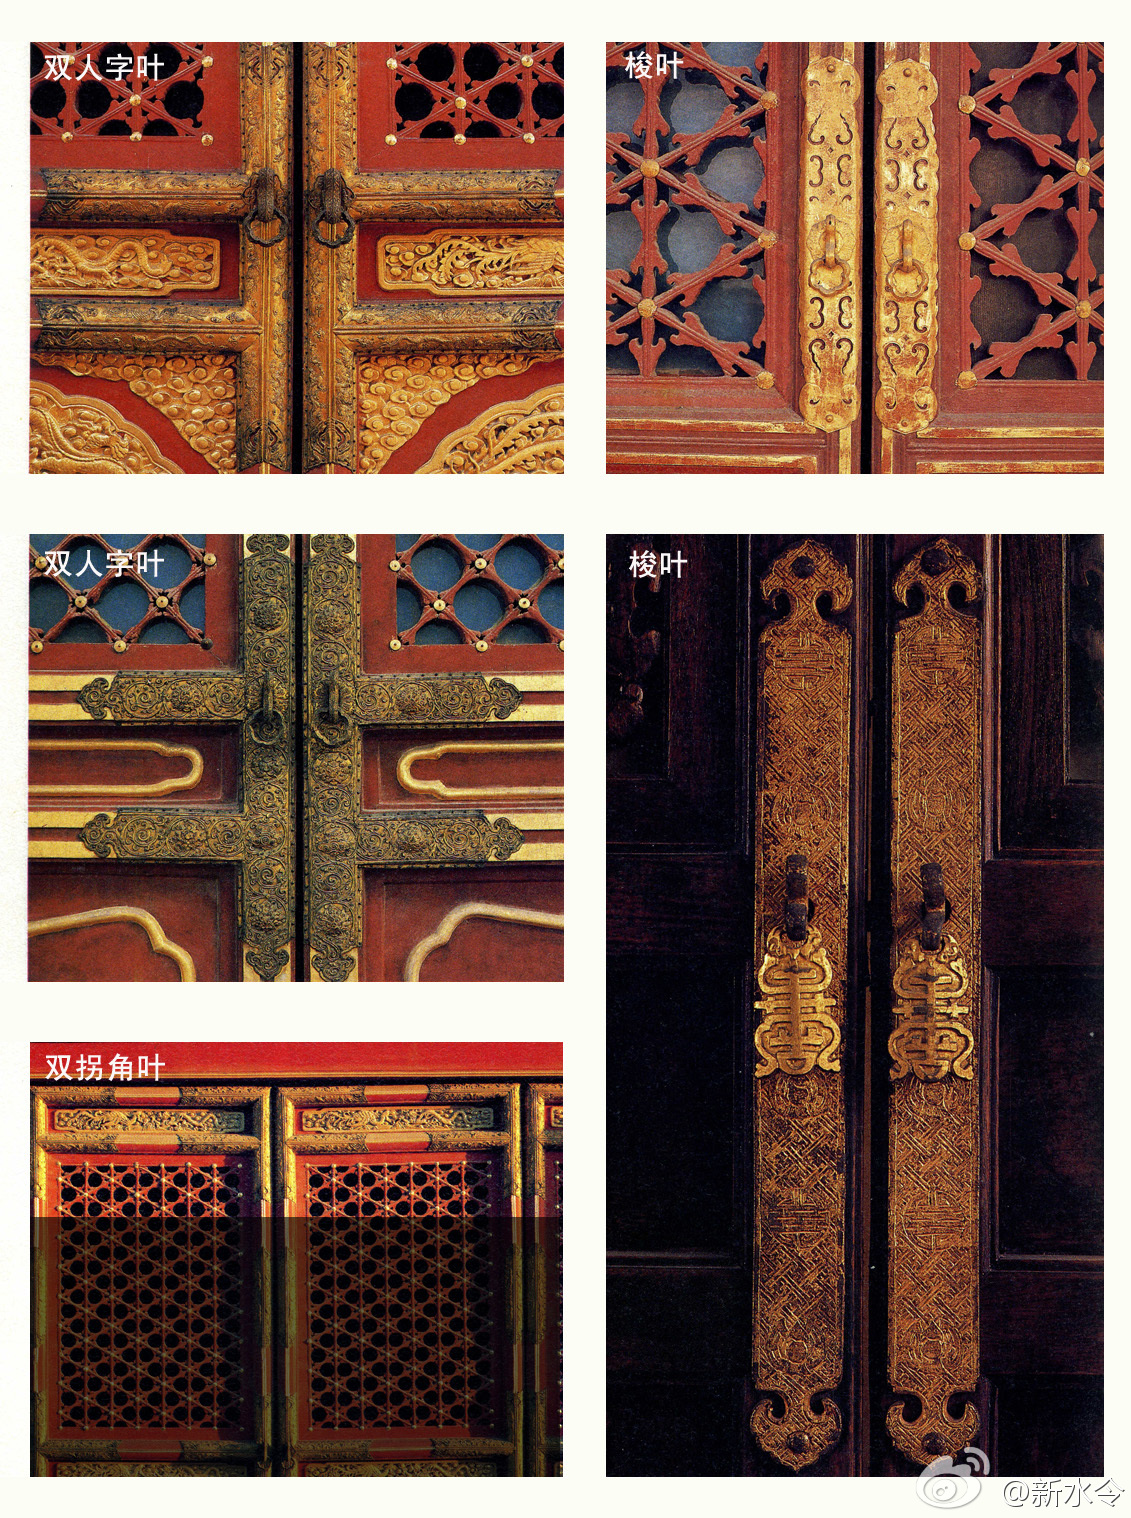 参观故宫时在宫殿建筑外檐装修的隔扇门和槛窗上能见到很多铜构件